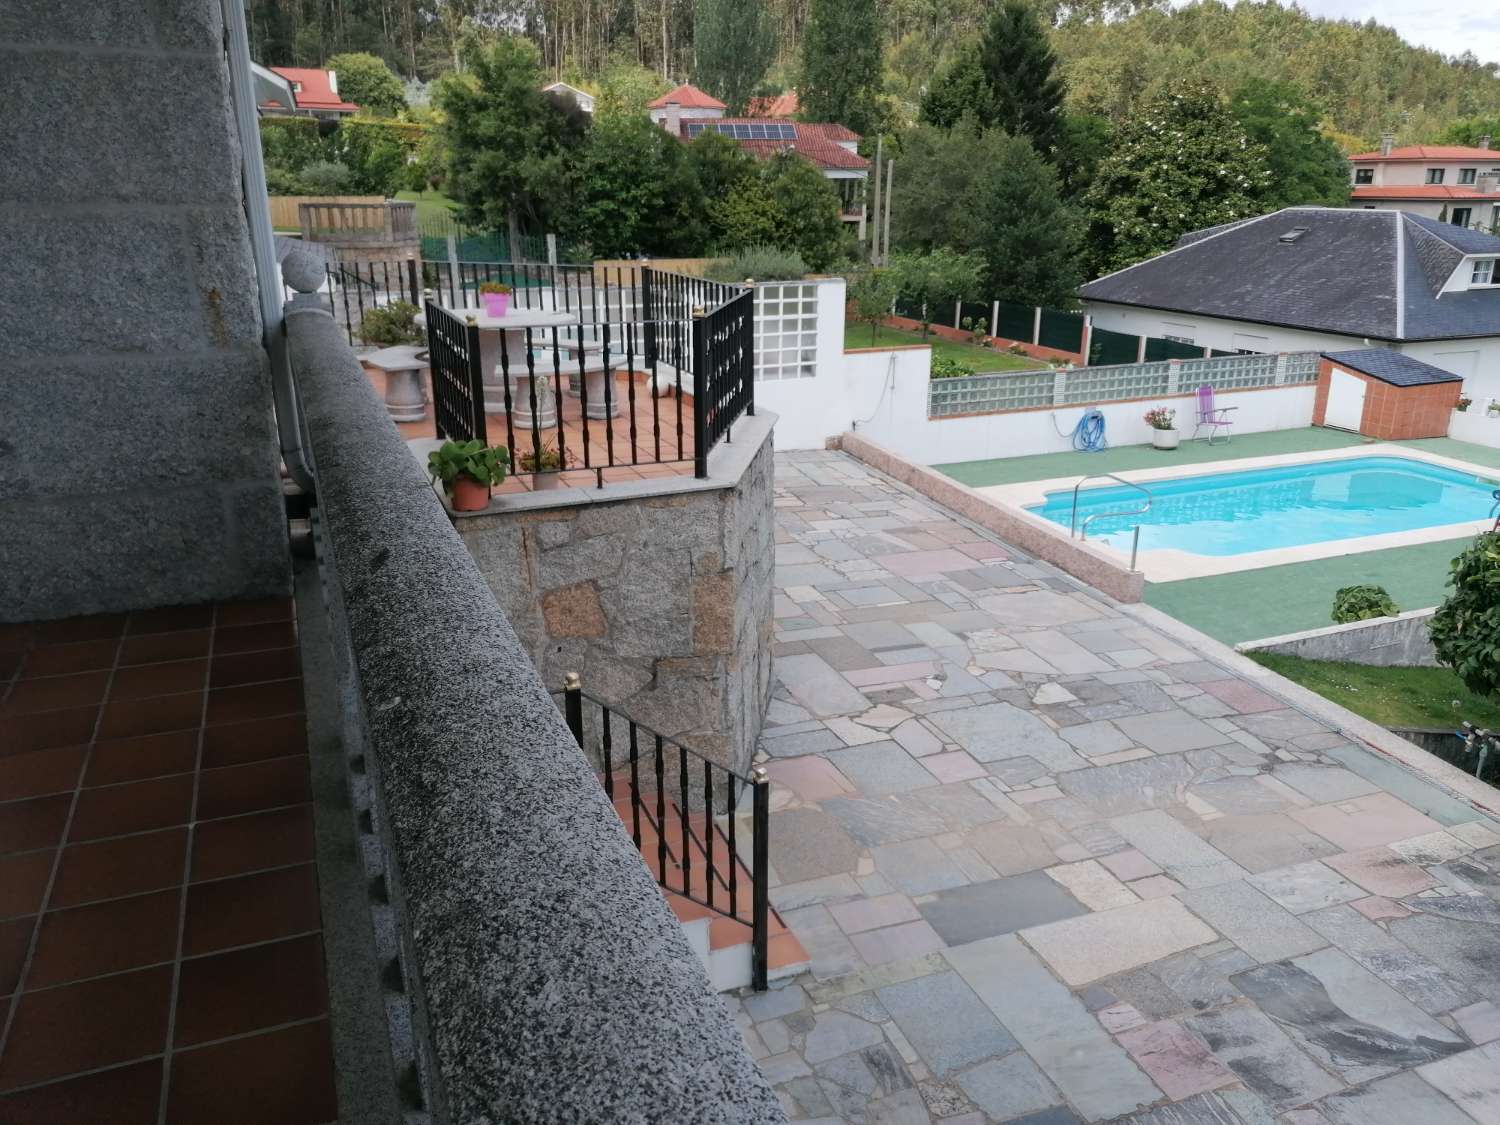 Poio: A7094: Samieira... Villa with farm, gardens, outdoor pool... sea views...